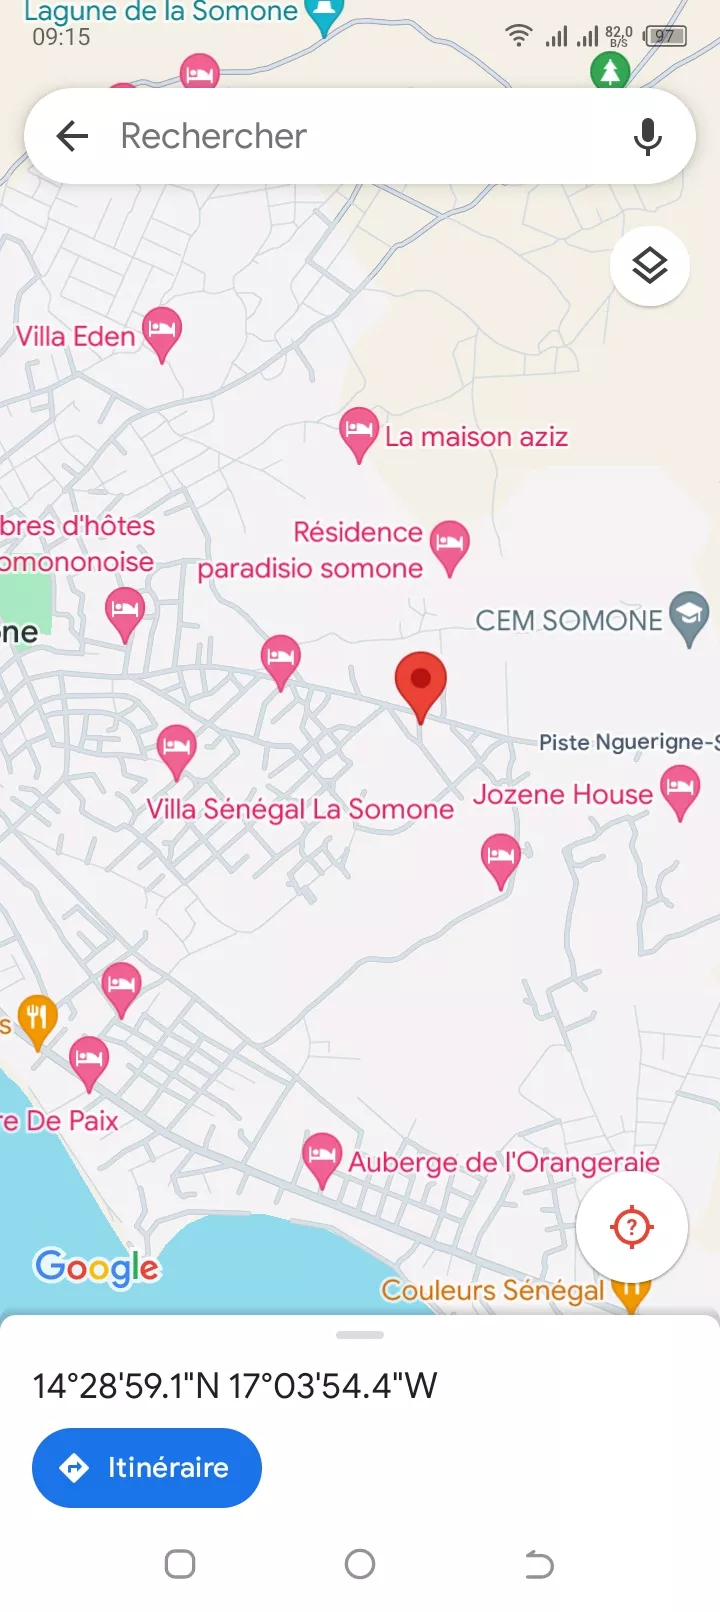 Terrain 300 mètres carrés à vendre à la Somone à 18000000 - Petites annonces gratuites - Achat et vente à Mbour, Sénégal